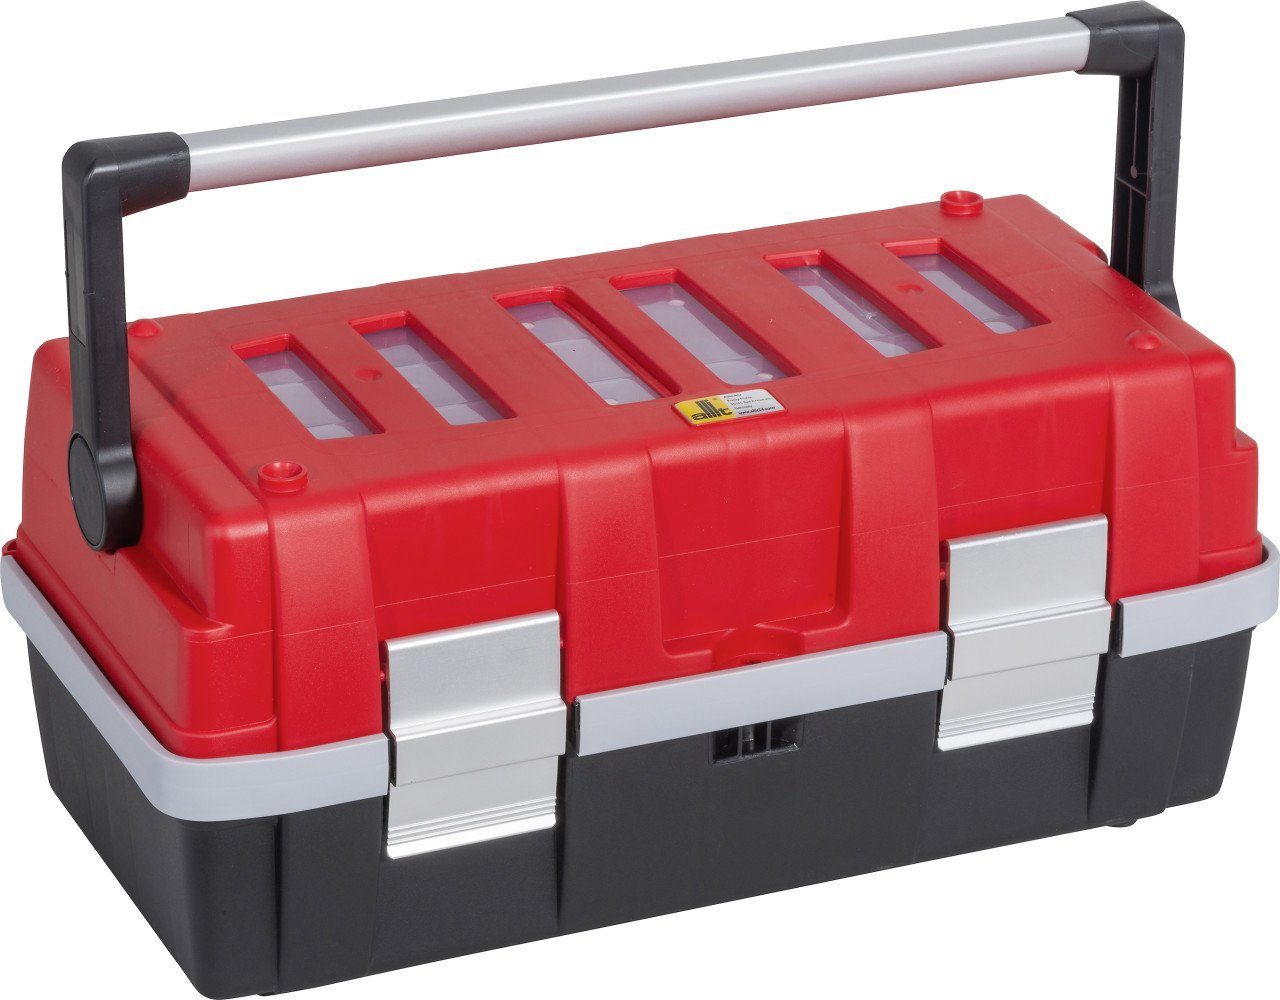 AluC18 Allit McPlus Profi-Werkzeugkoffer rot Allit Werkzeugkoffer